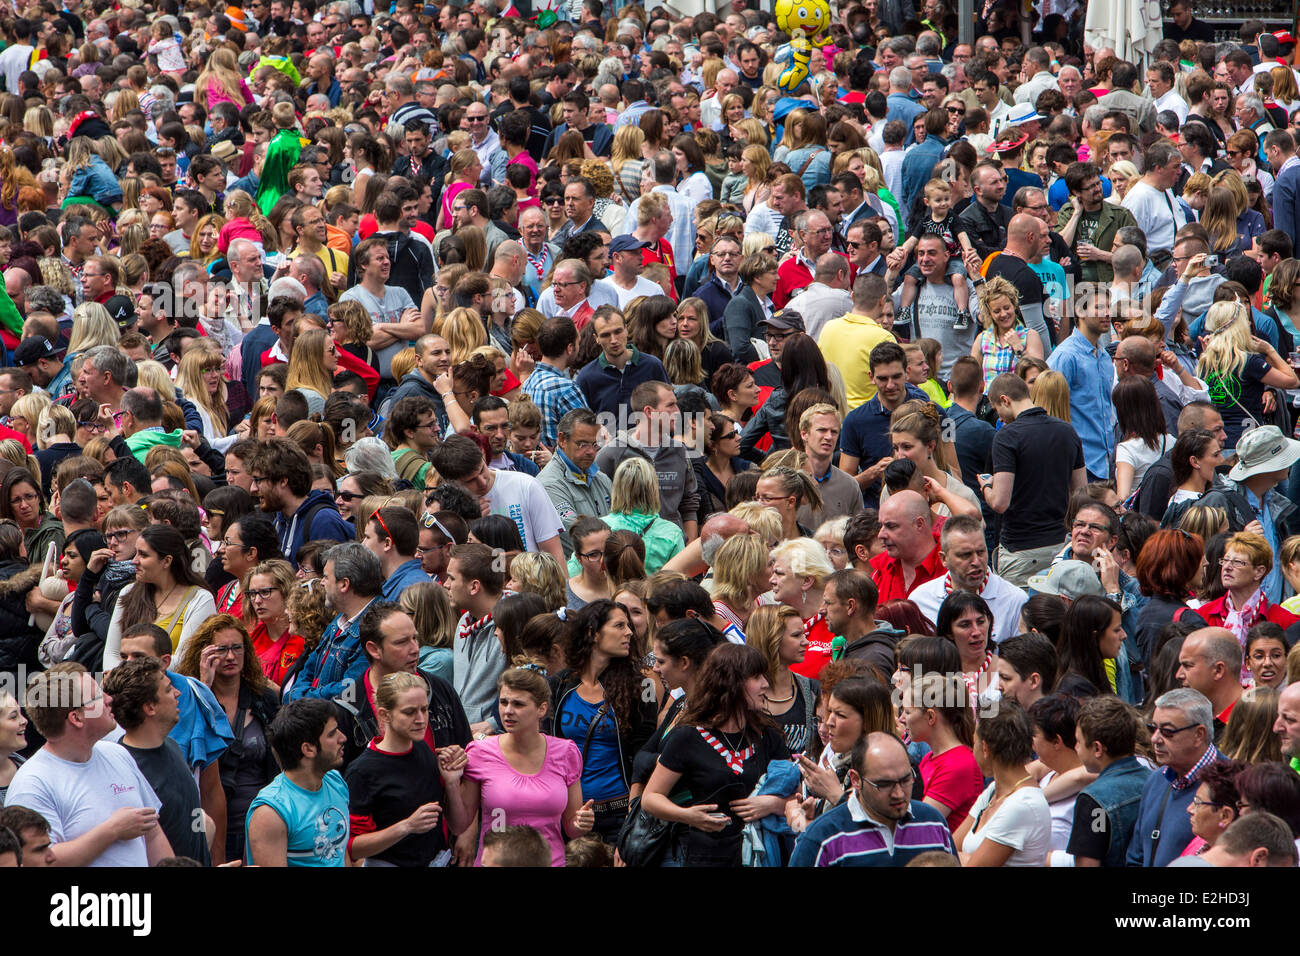 Foule, de nombreuses personnes dans un espace confiné, lors d'un festival, Banque D'Images